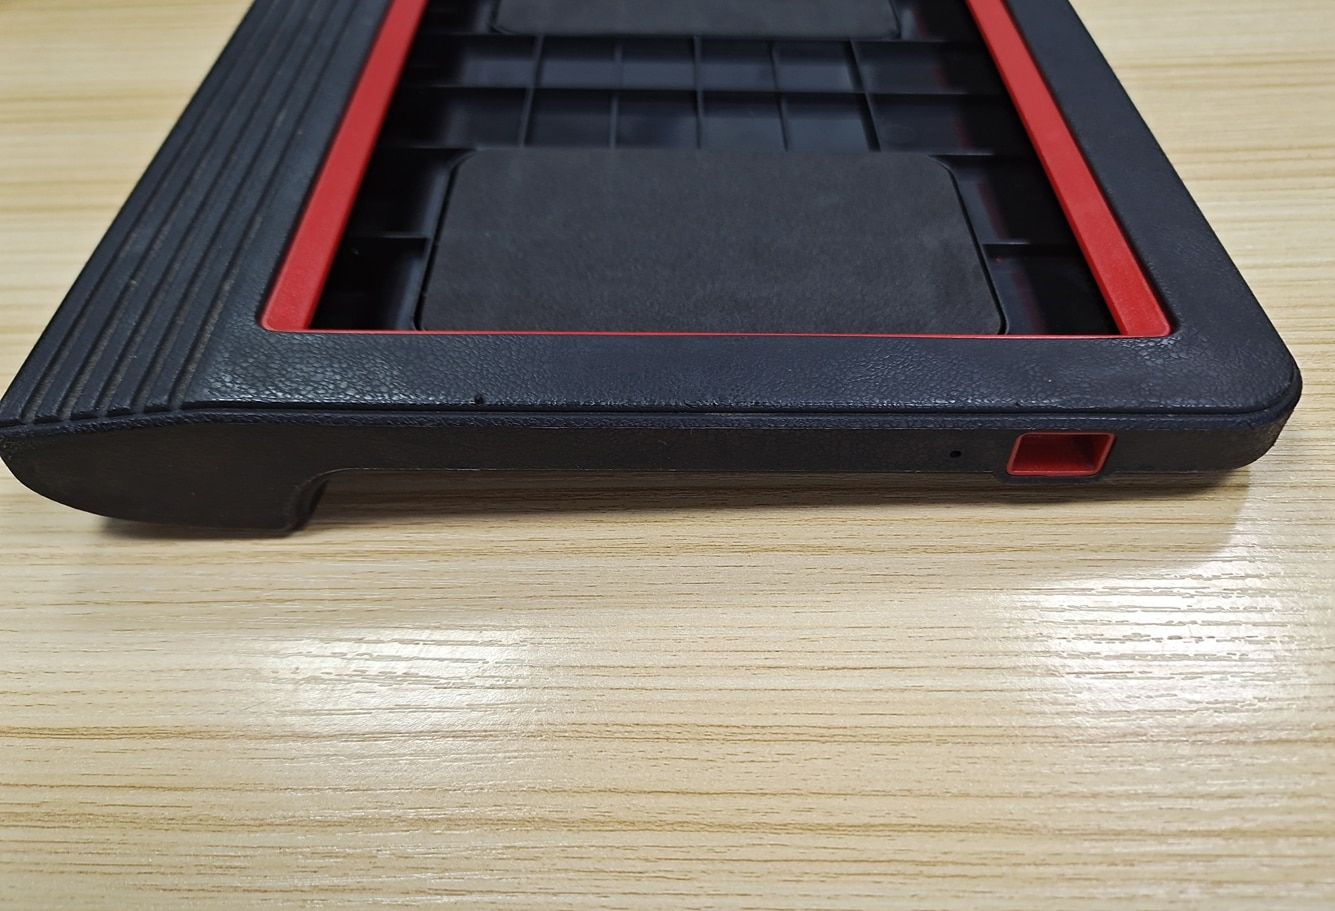 X431 10형 태블릿 케이스 출시 